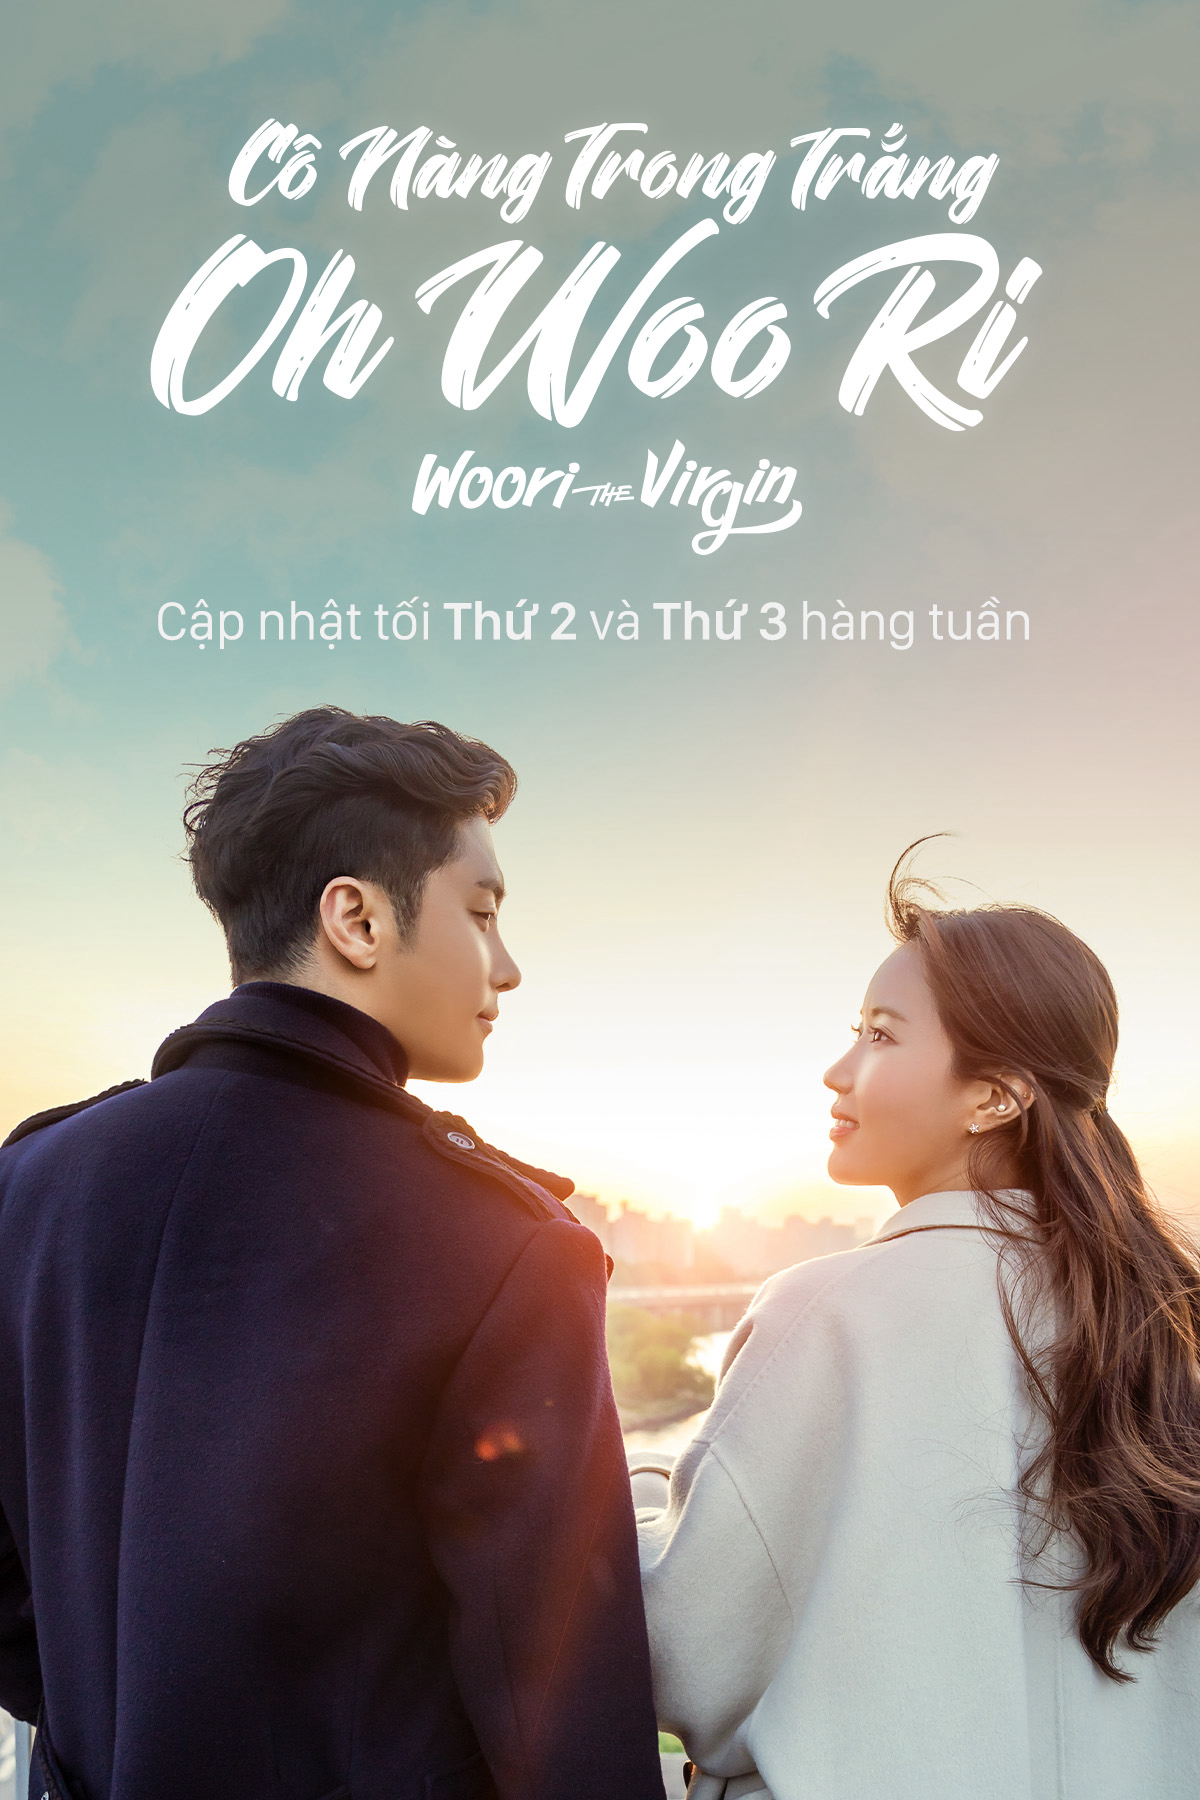 Poster Phim Cô Nàng Trong Trắng Oh Woo Ri (Woori The Virgin)